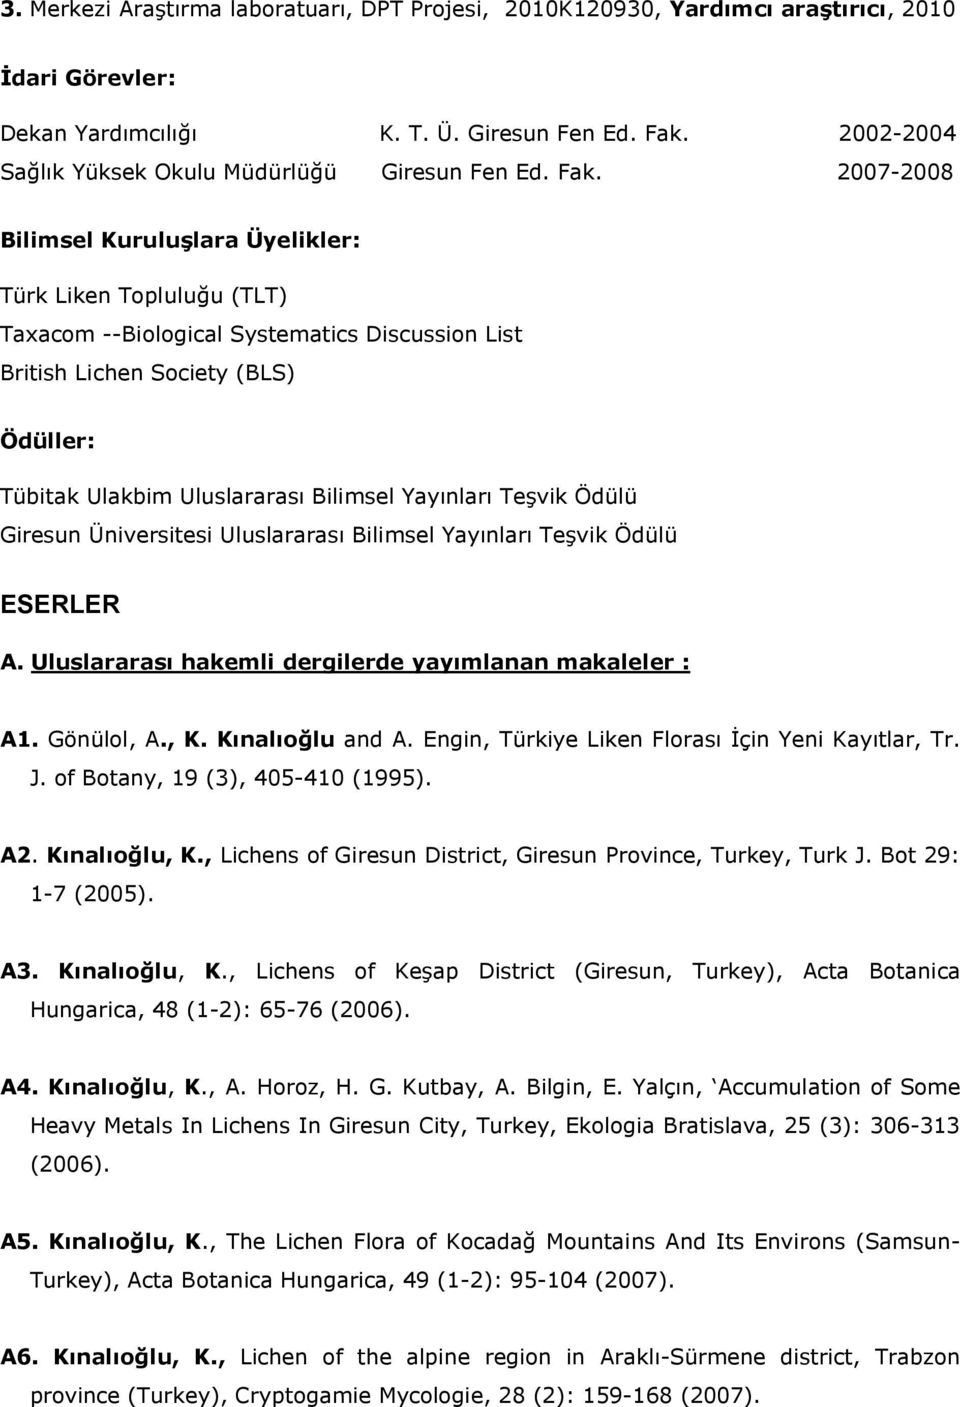 2007-2008 Bilimsel Kuruluşlara Üyelikler: Türk Liken Topluluğu (TLT) Taxacom --Biological Systematics Discussion List British Lichen Society (BLS) Ödüller: Tübitak Ulakbim Uluslararası Bilimsel